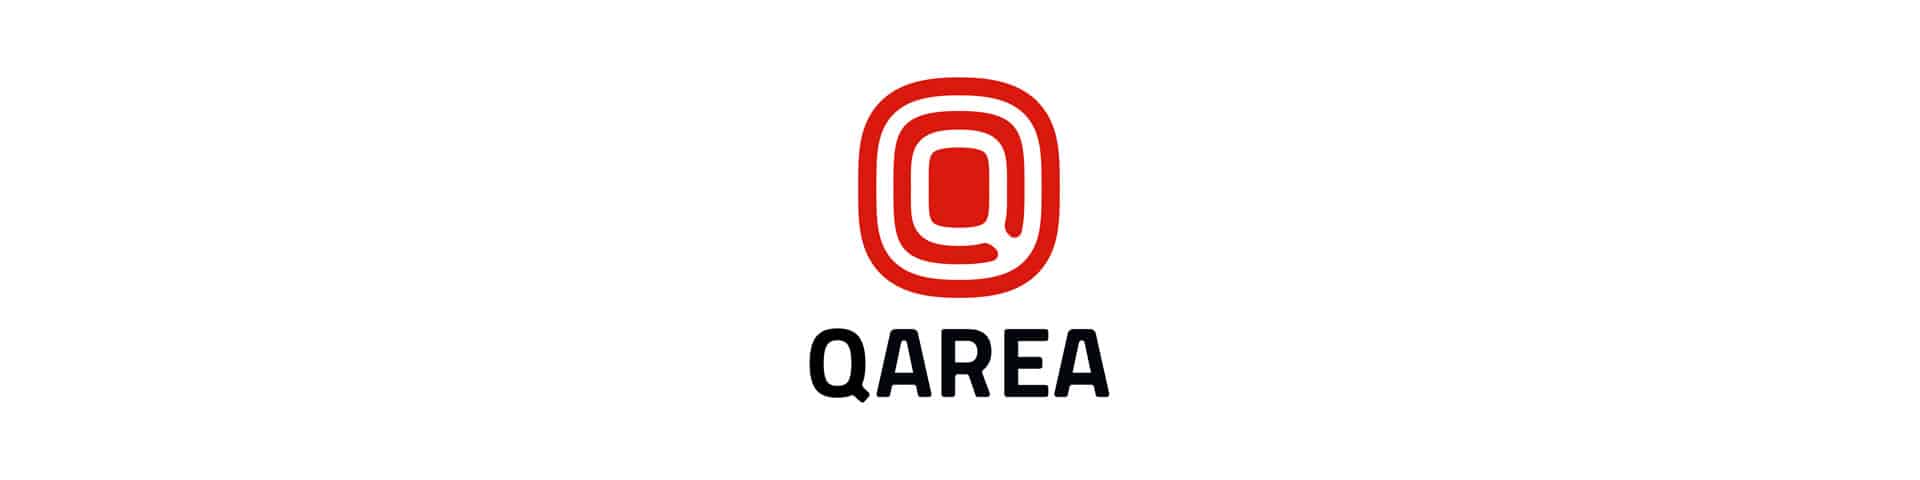 Qarea Company